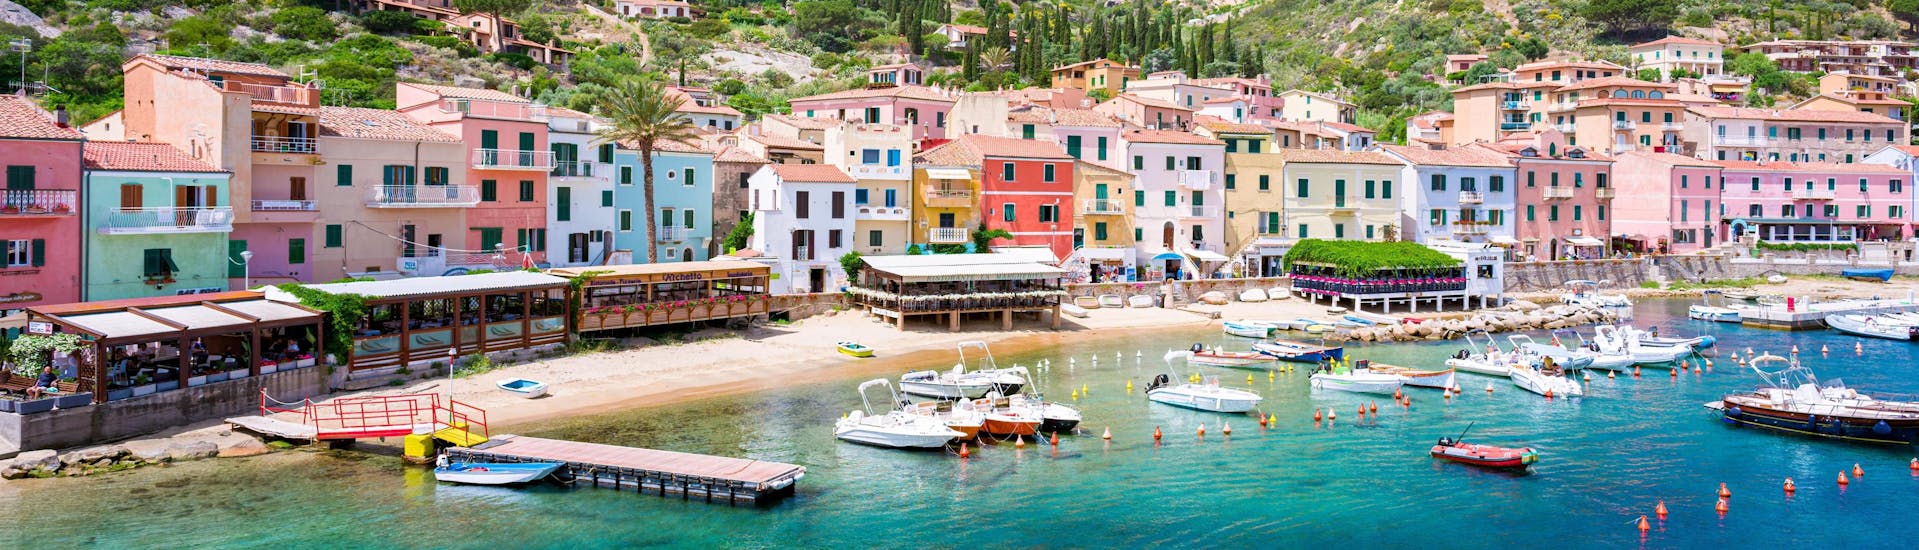 Vista sul porto del Giglio, una splendida località che si può visitare durante una gita in barca nell'Arcipelago Toscano.